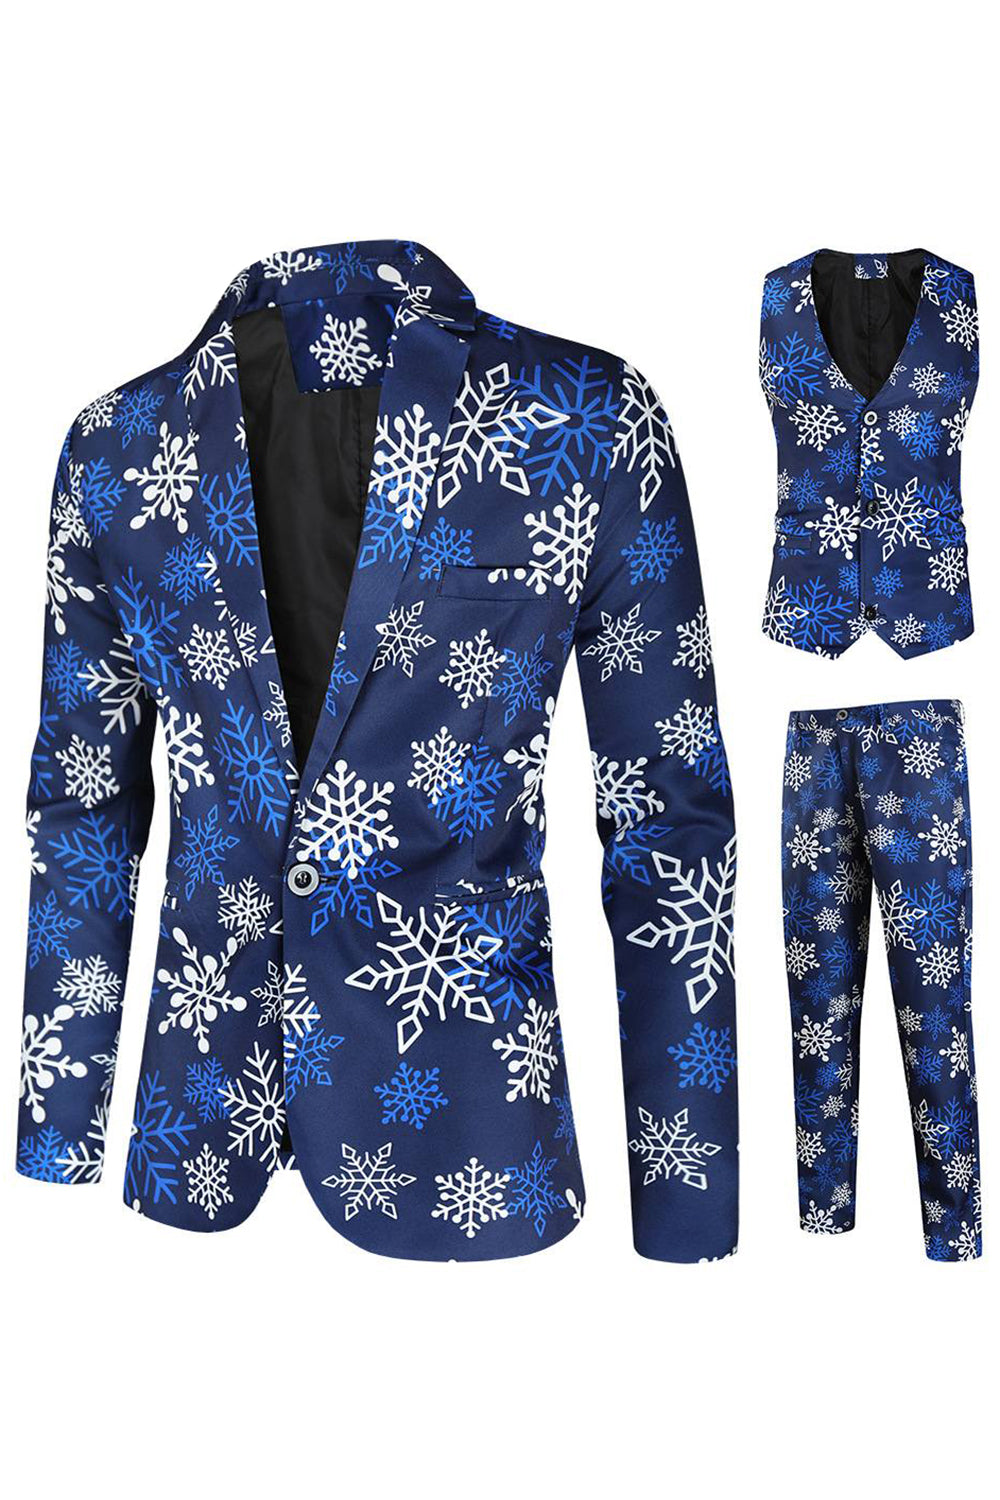 Blaue Schneeflocke bedruckt 3-teilige Herren Weihnachtsfeier Anzüge